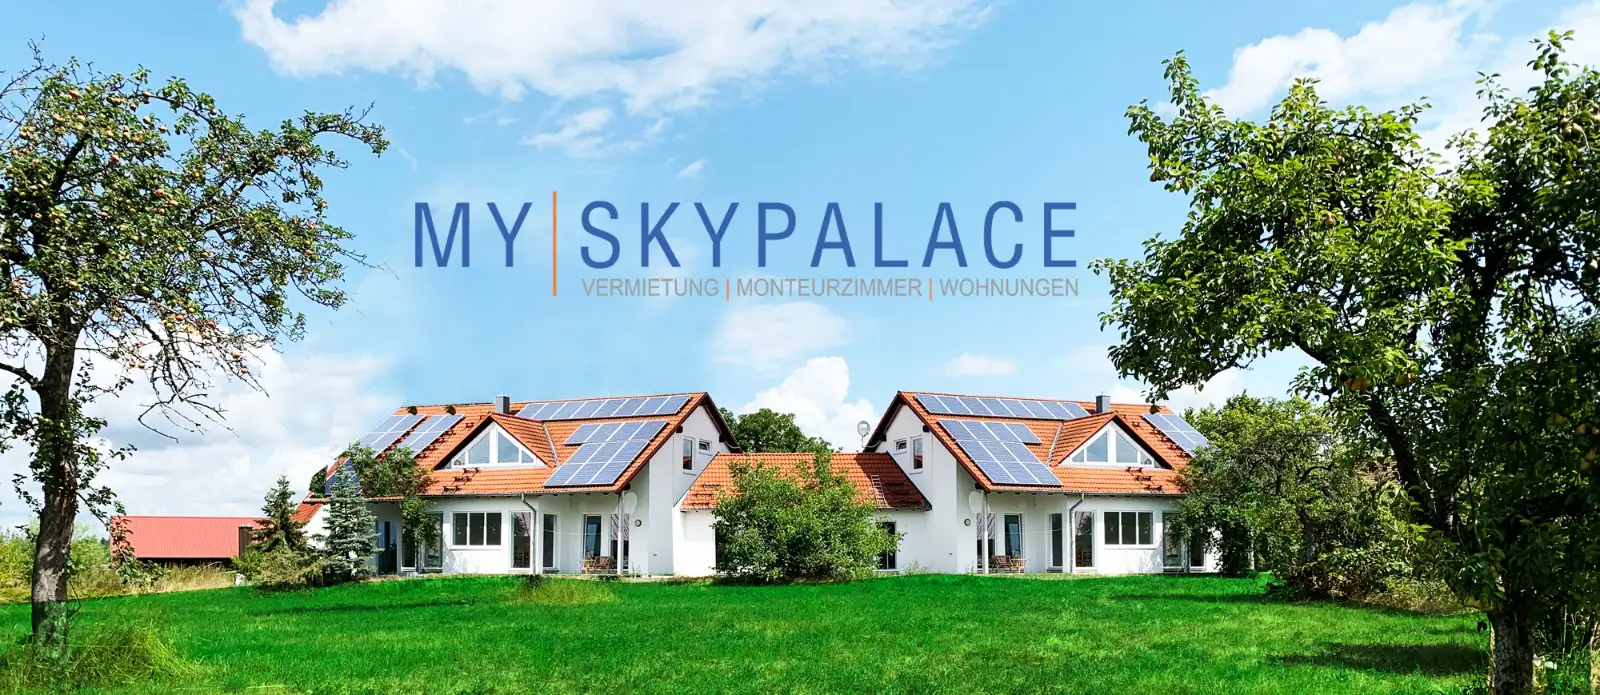 My Skypalace - Vermietung Monteurwohnungen